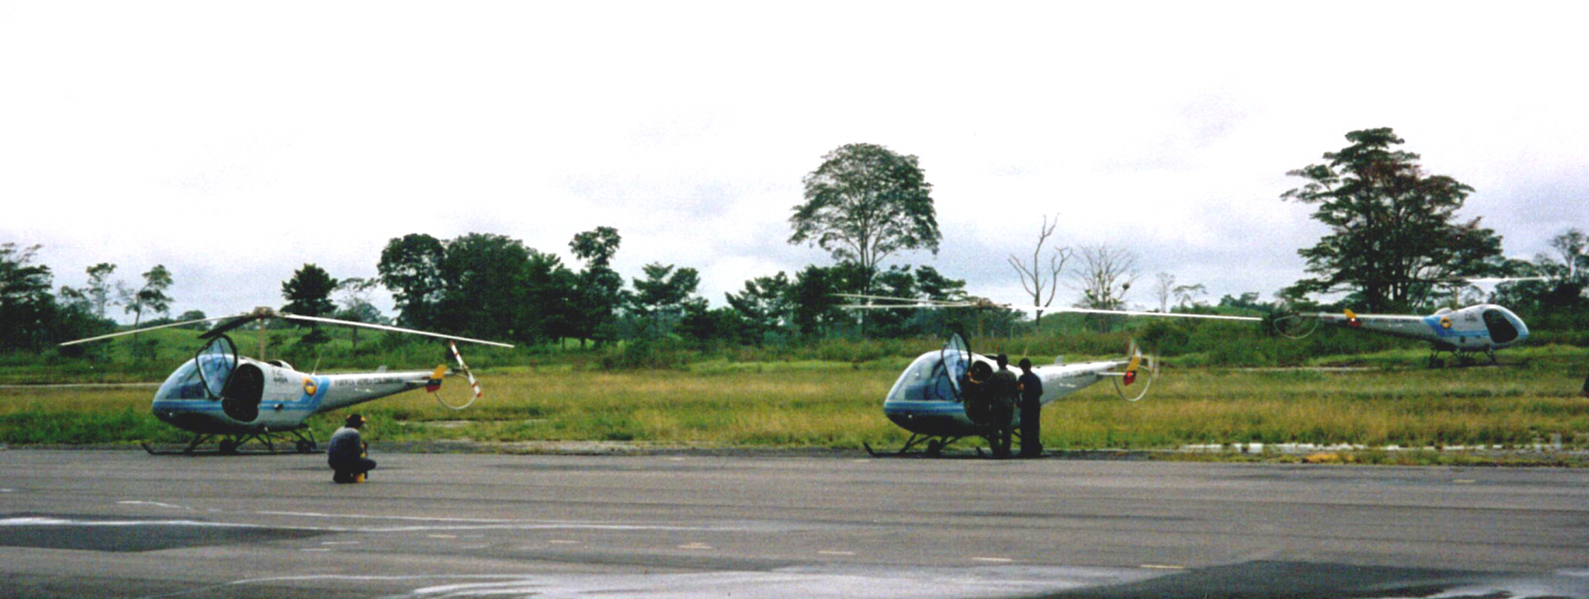 哥倫比亞空軍採購12架恩斯特龍F28F